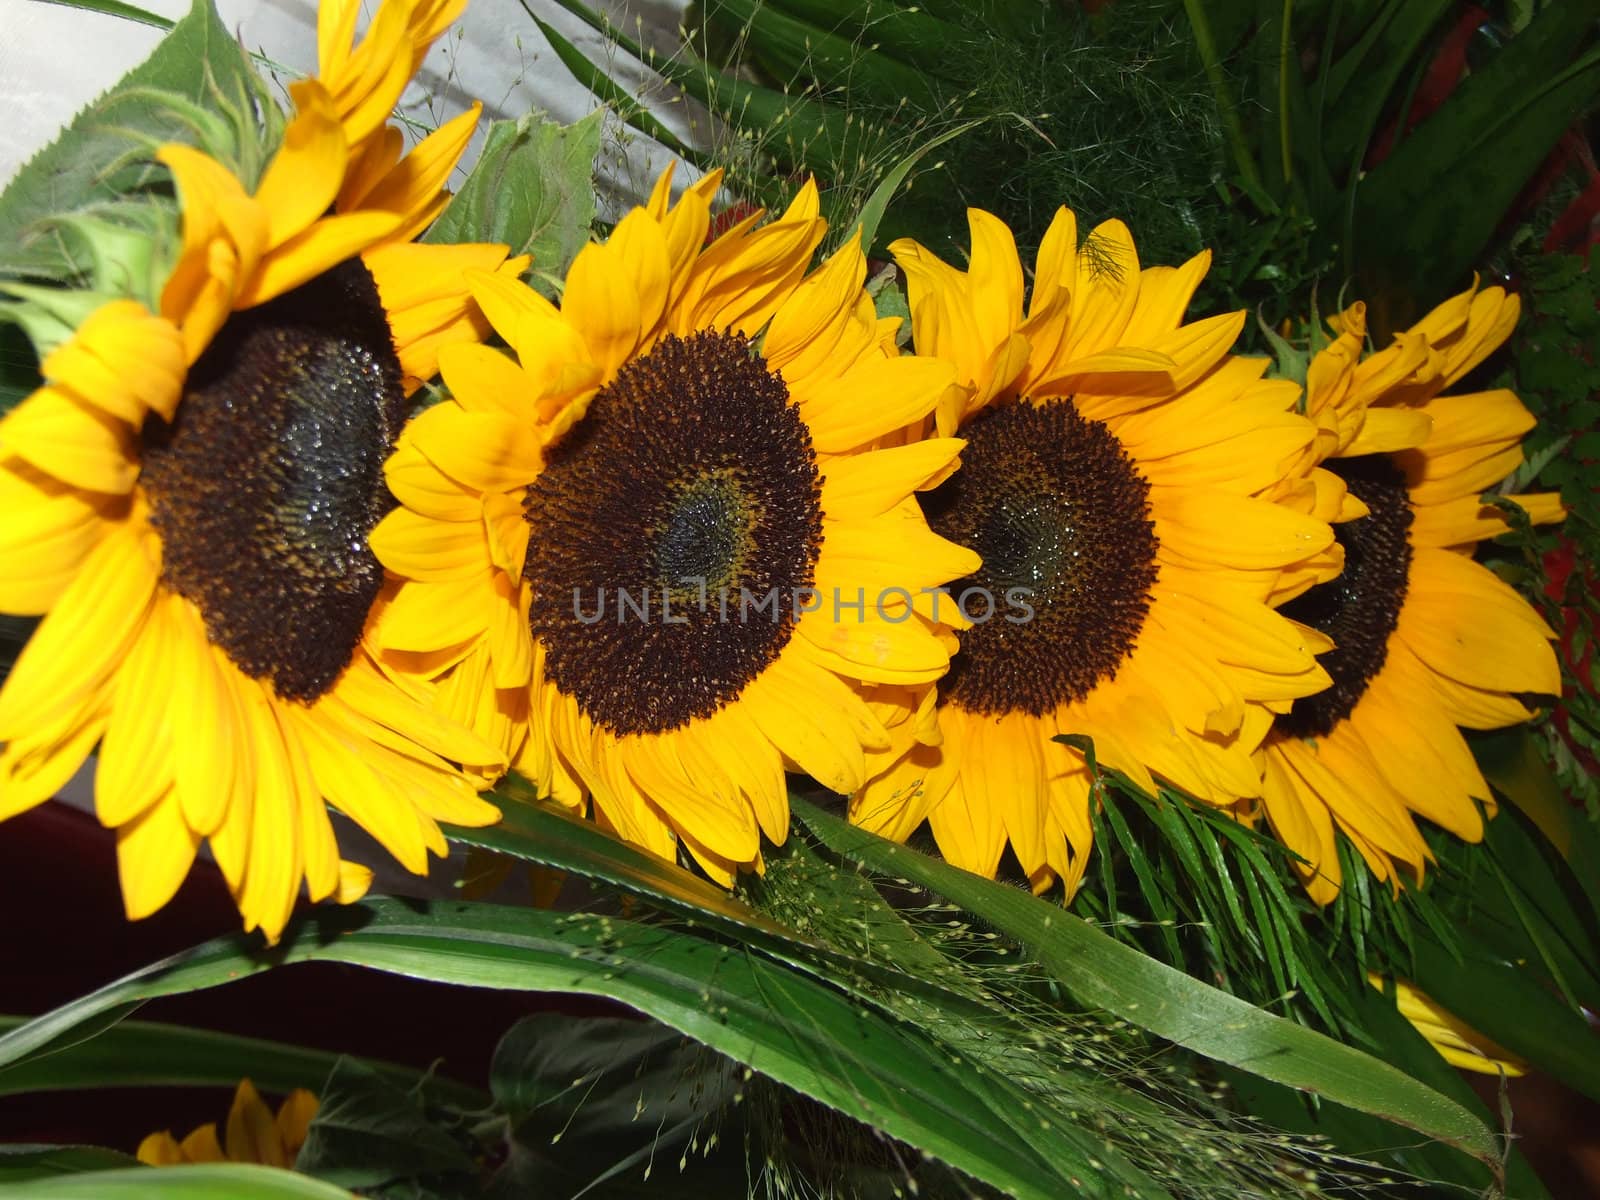 sunflowers by grzym